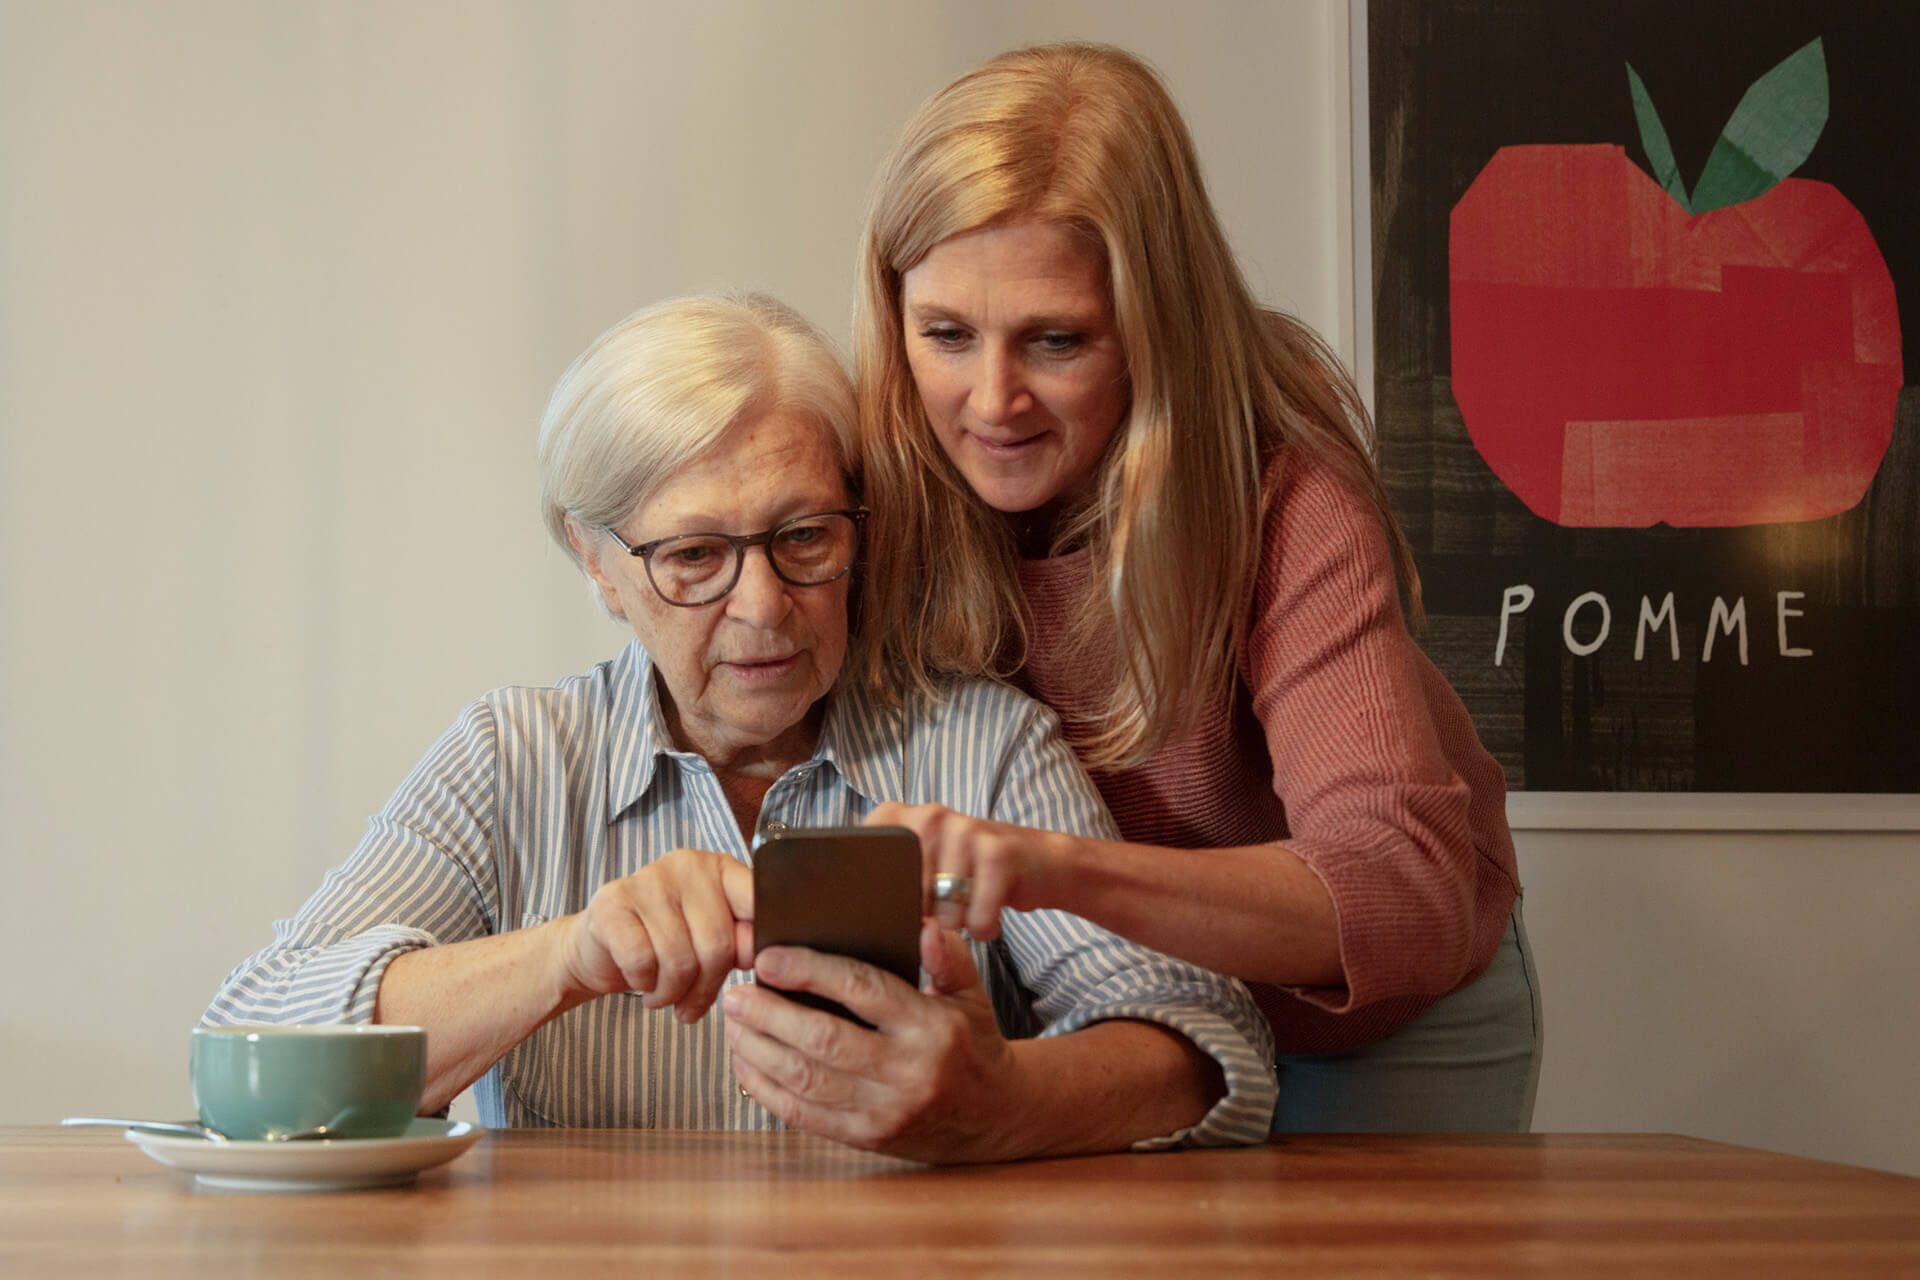 Eine jüngere Frau hilft einer älteren Frau bei der Bedienung des Smartphones.